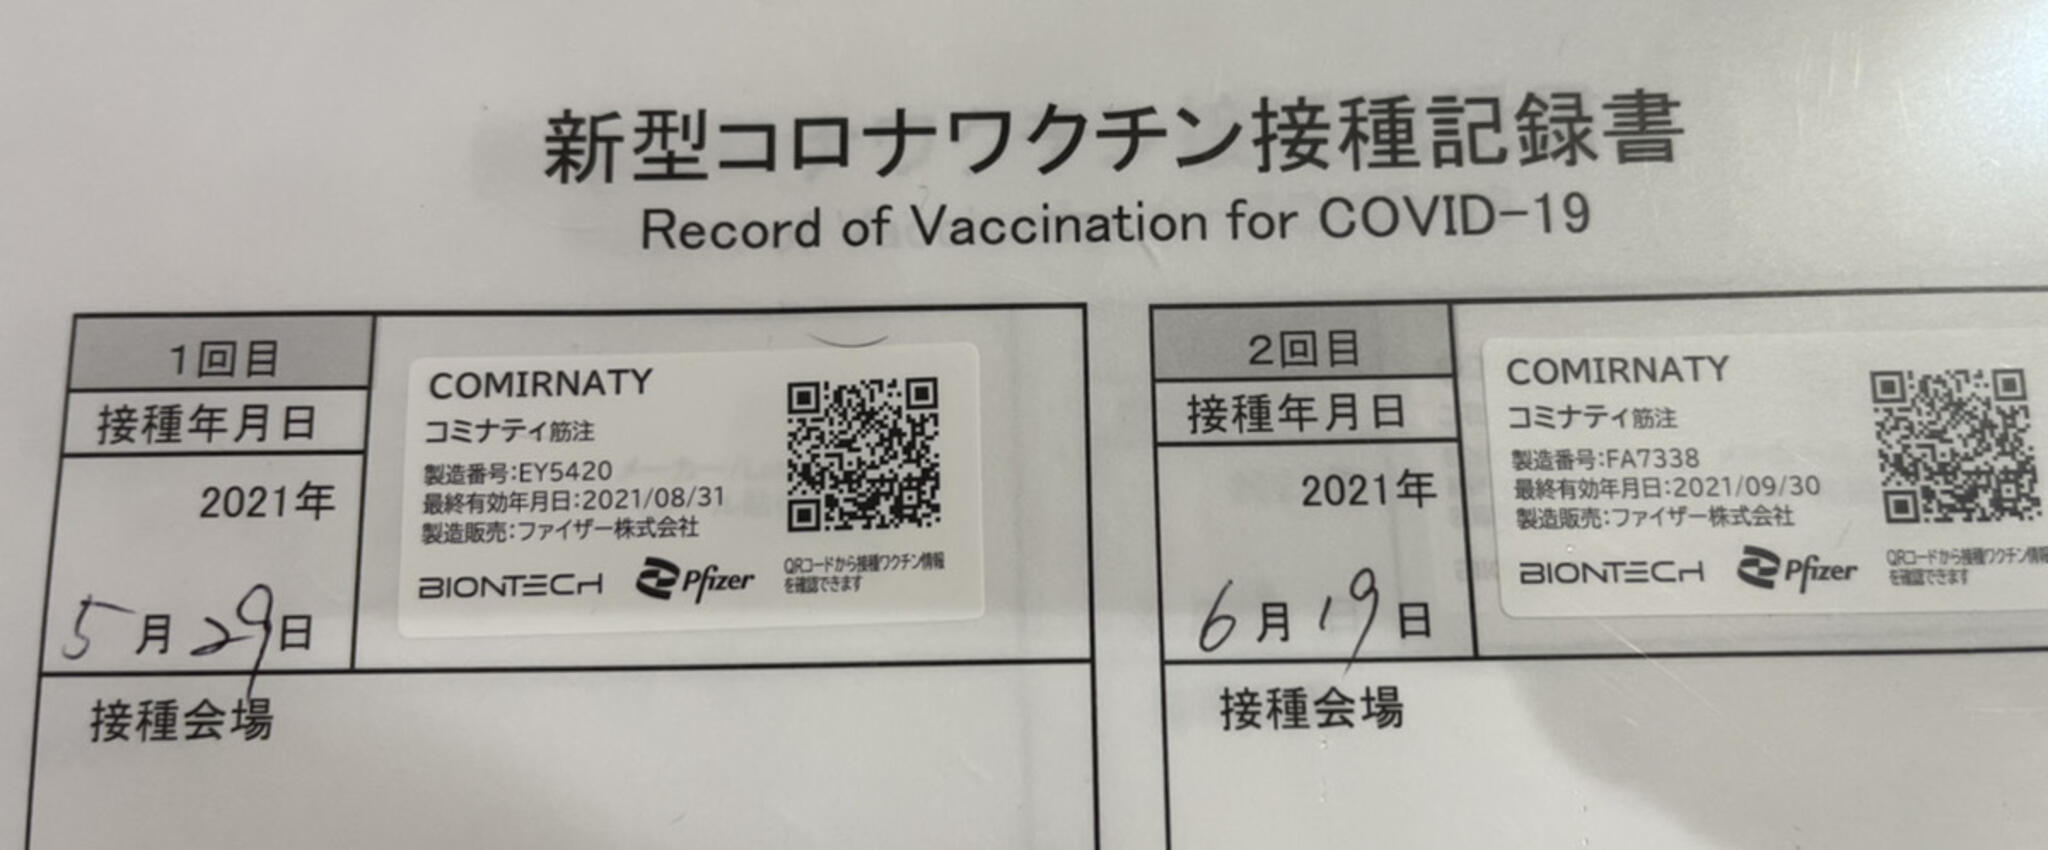 宇治小倉駅前 こにし歯科医院からのお知らせ(コロナワクチン)に関する写真